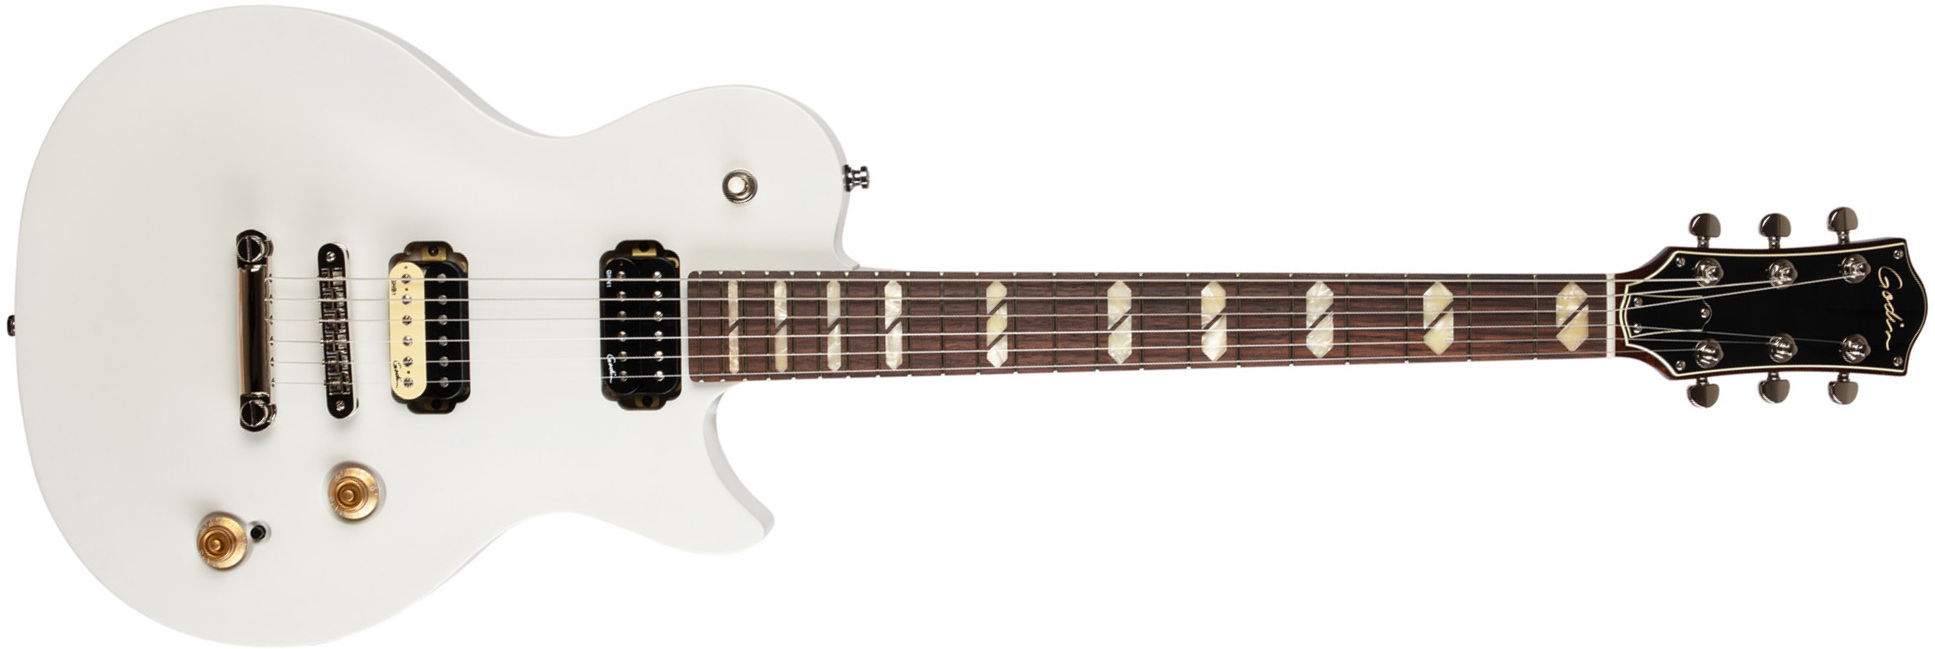 Godin Summit Classic Hh Ht Rw - Trans White - Enkel gesneden elektrische gitaar - Main picture